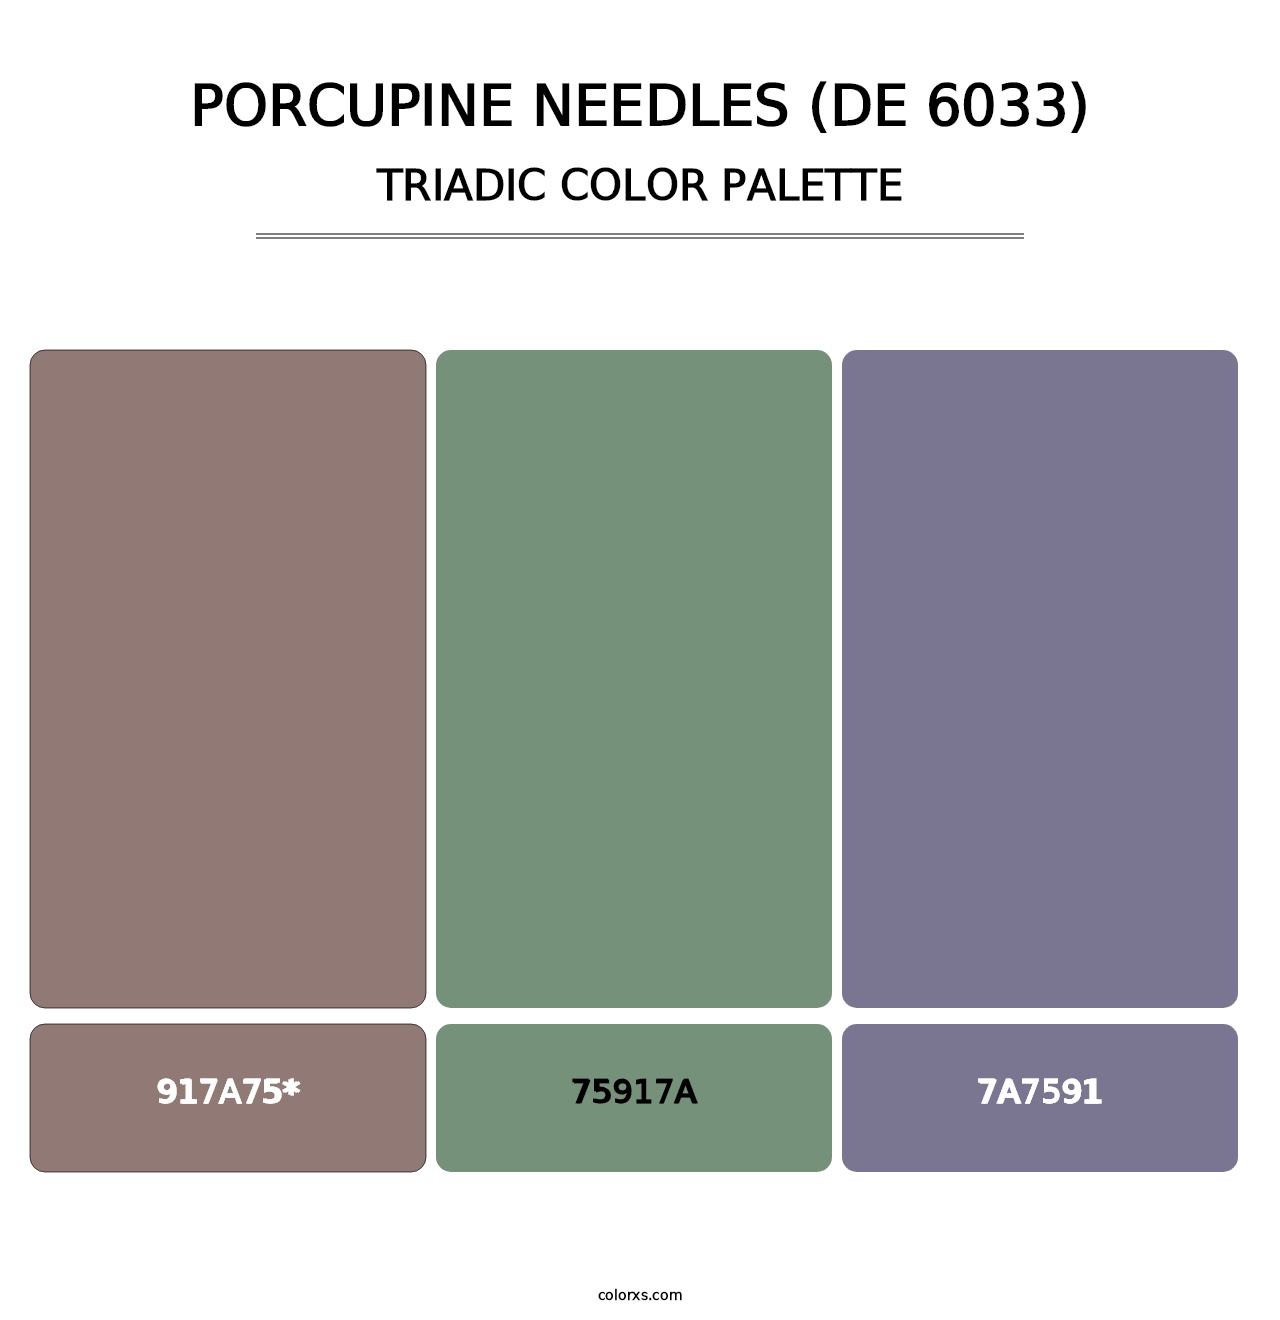 Porcupine Needles (DE 6033) - Triadic Color Palette